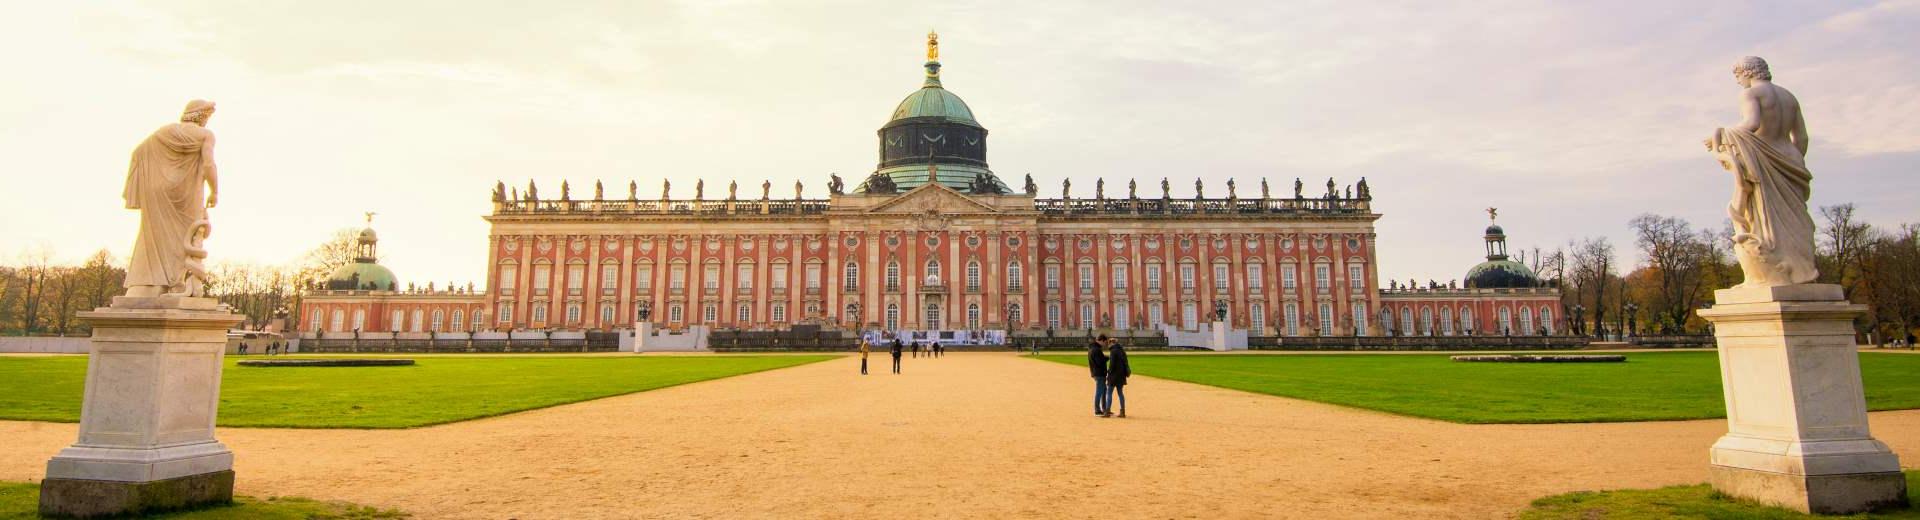 Vakantiehuis Potsdam – stad van de mooie Pruisische paleizen en prachtige tuinen - EuroRelais